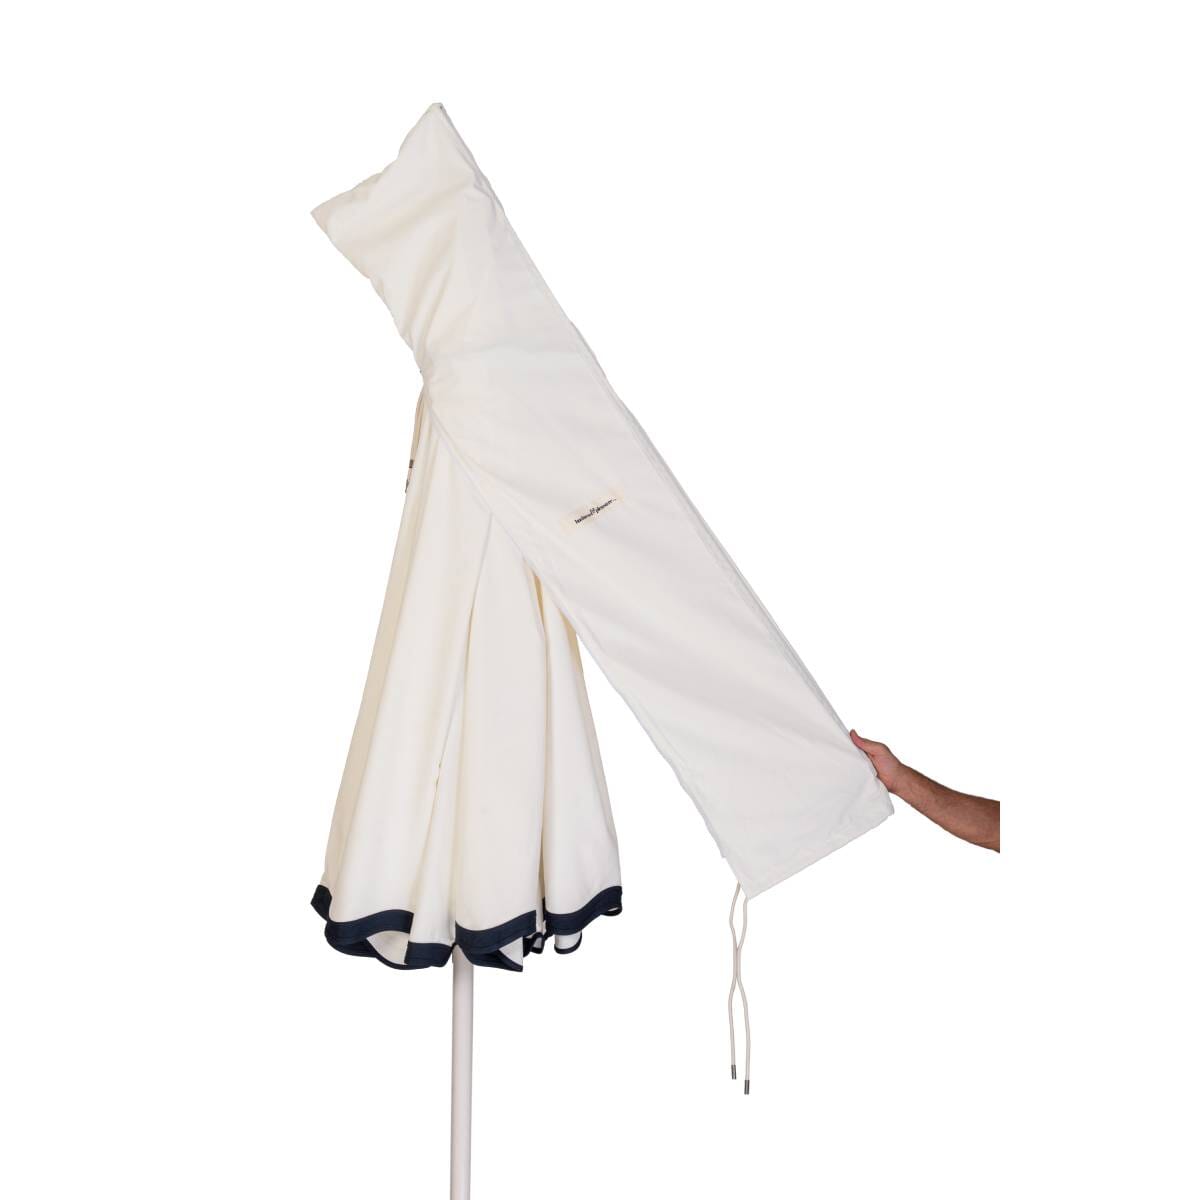 Studio image of rivie white patio umbrella